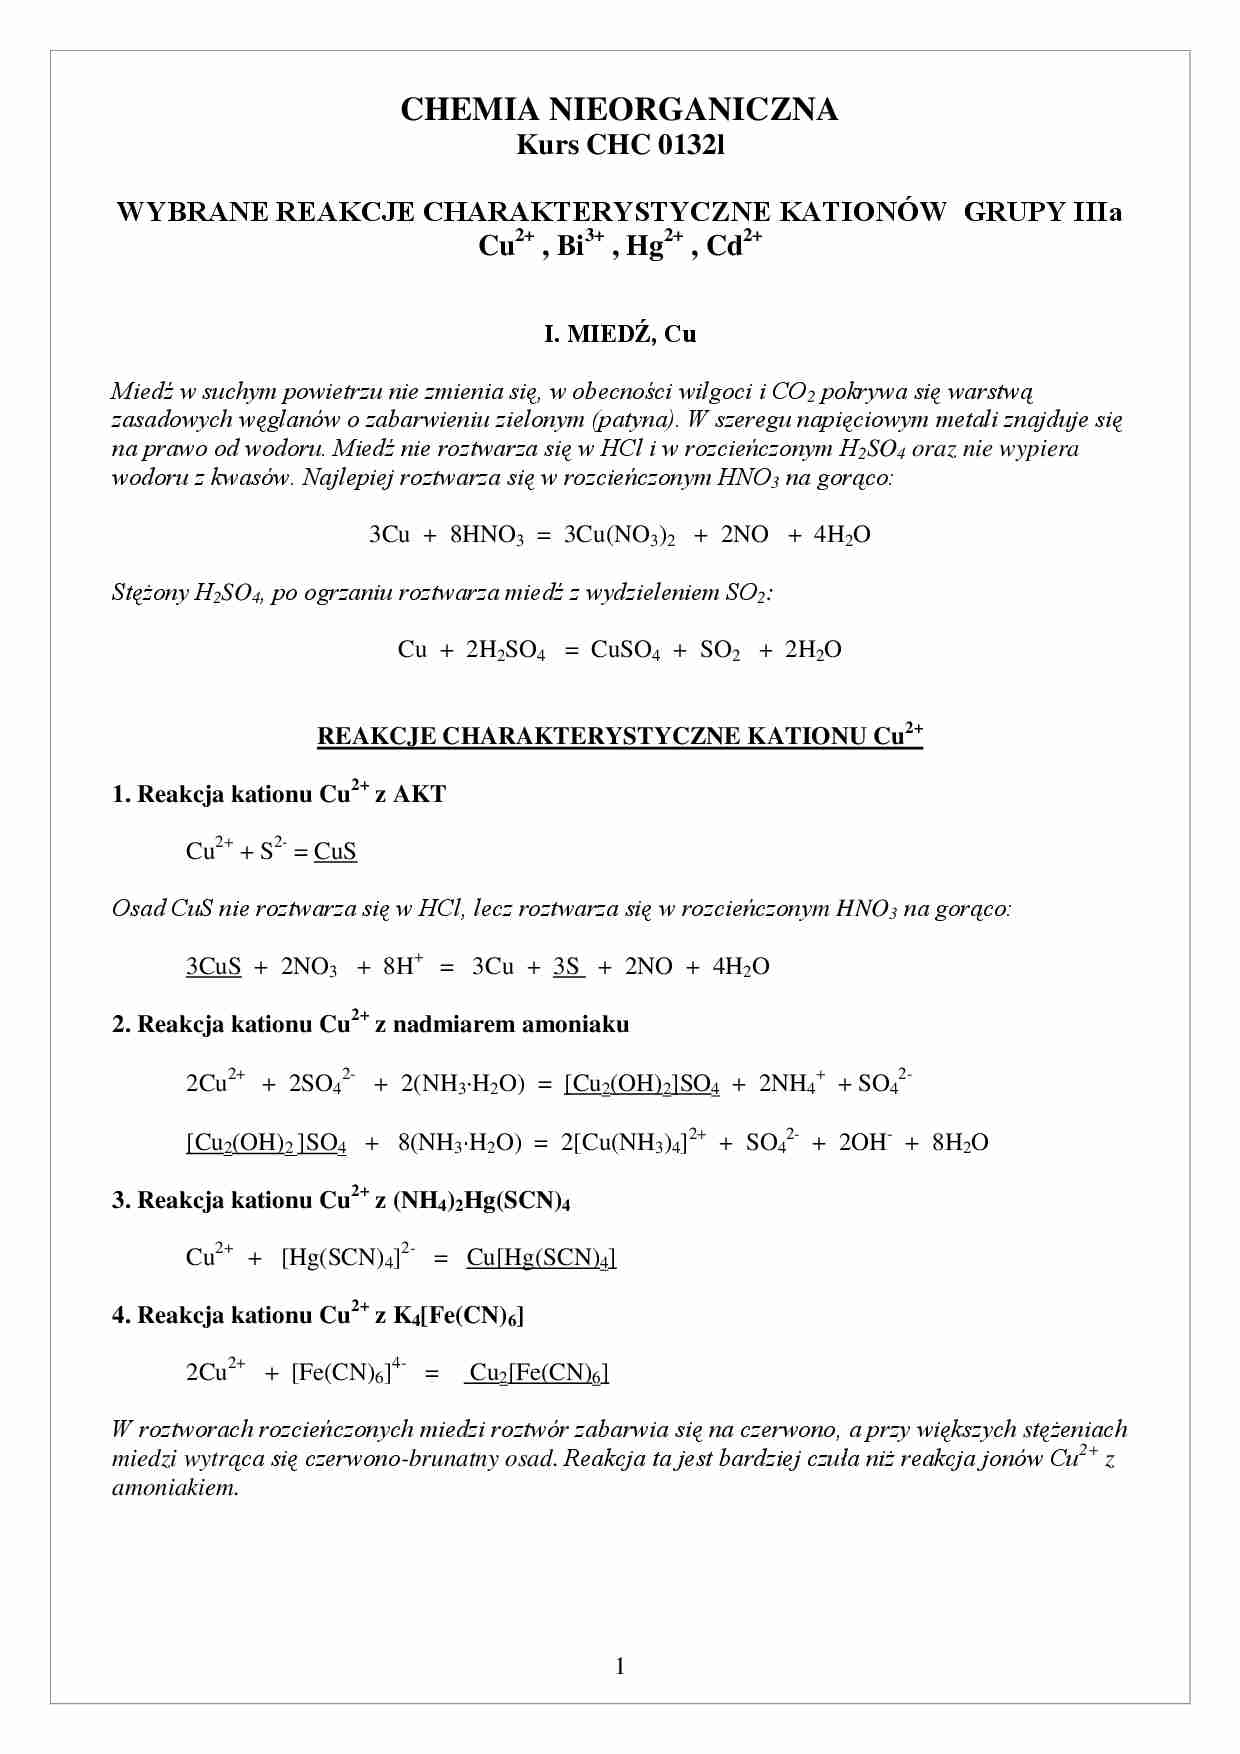 chemia nieorganiczna - reakcje  charakterystyczne kationów 3 - strona 1